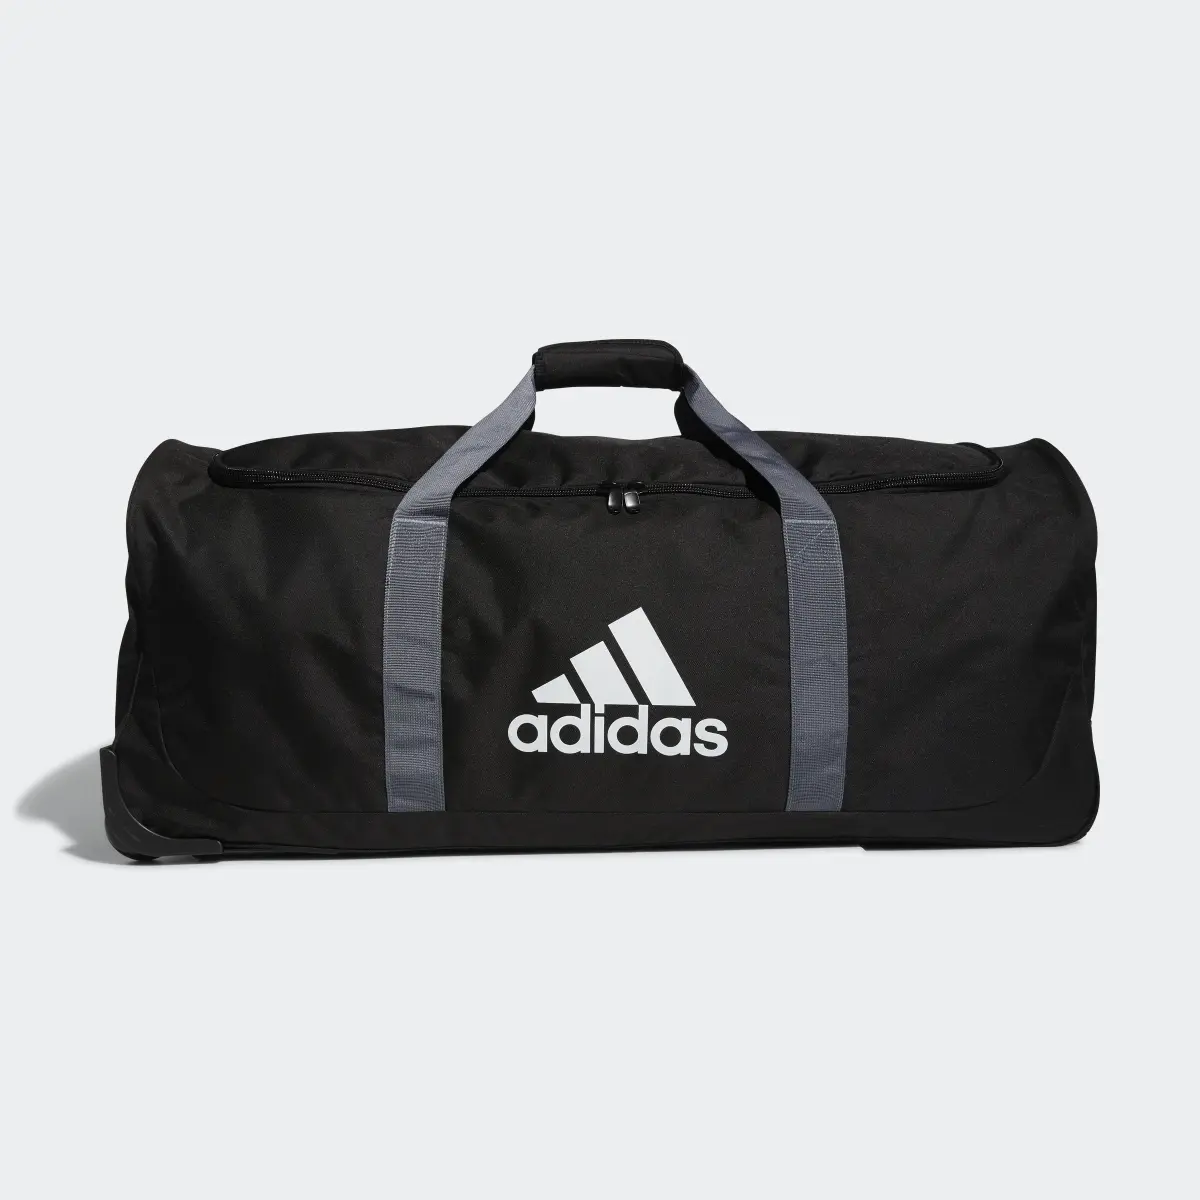 Adidas Team Wheel Bag XL. 2